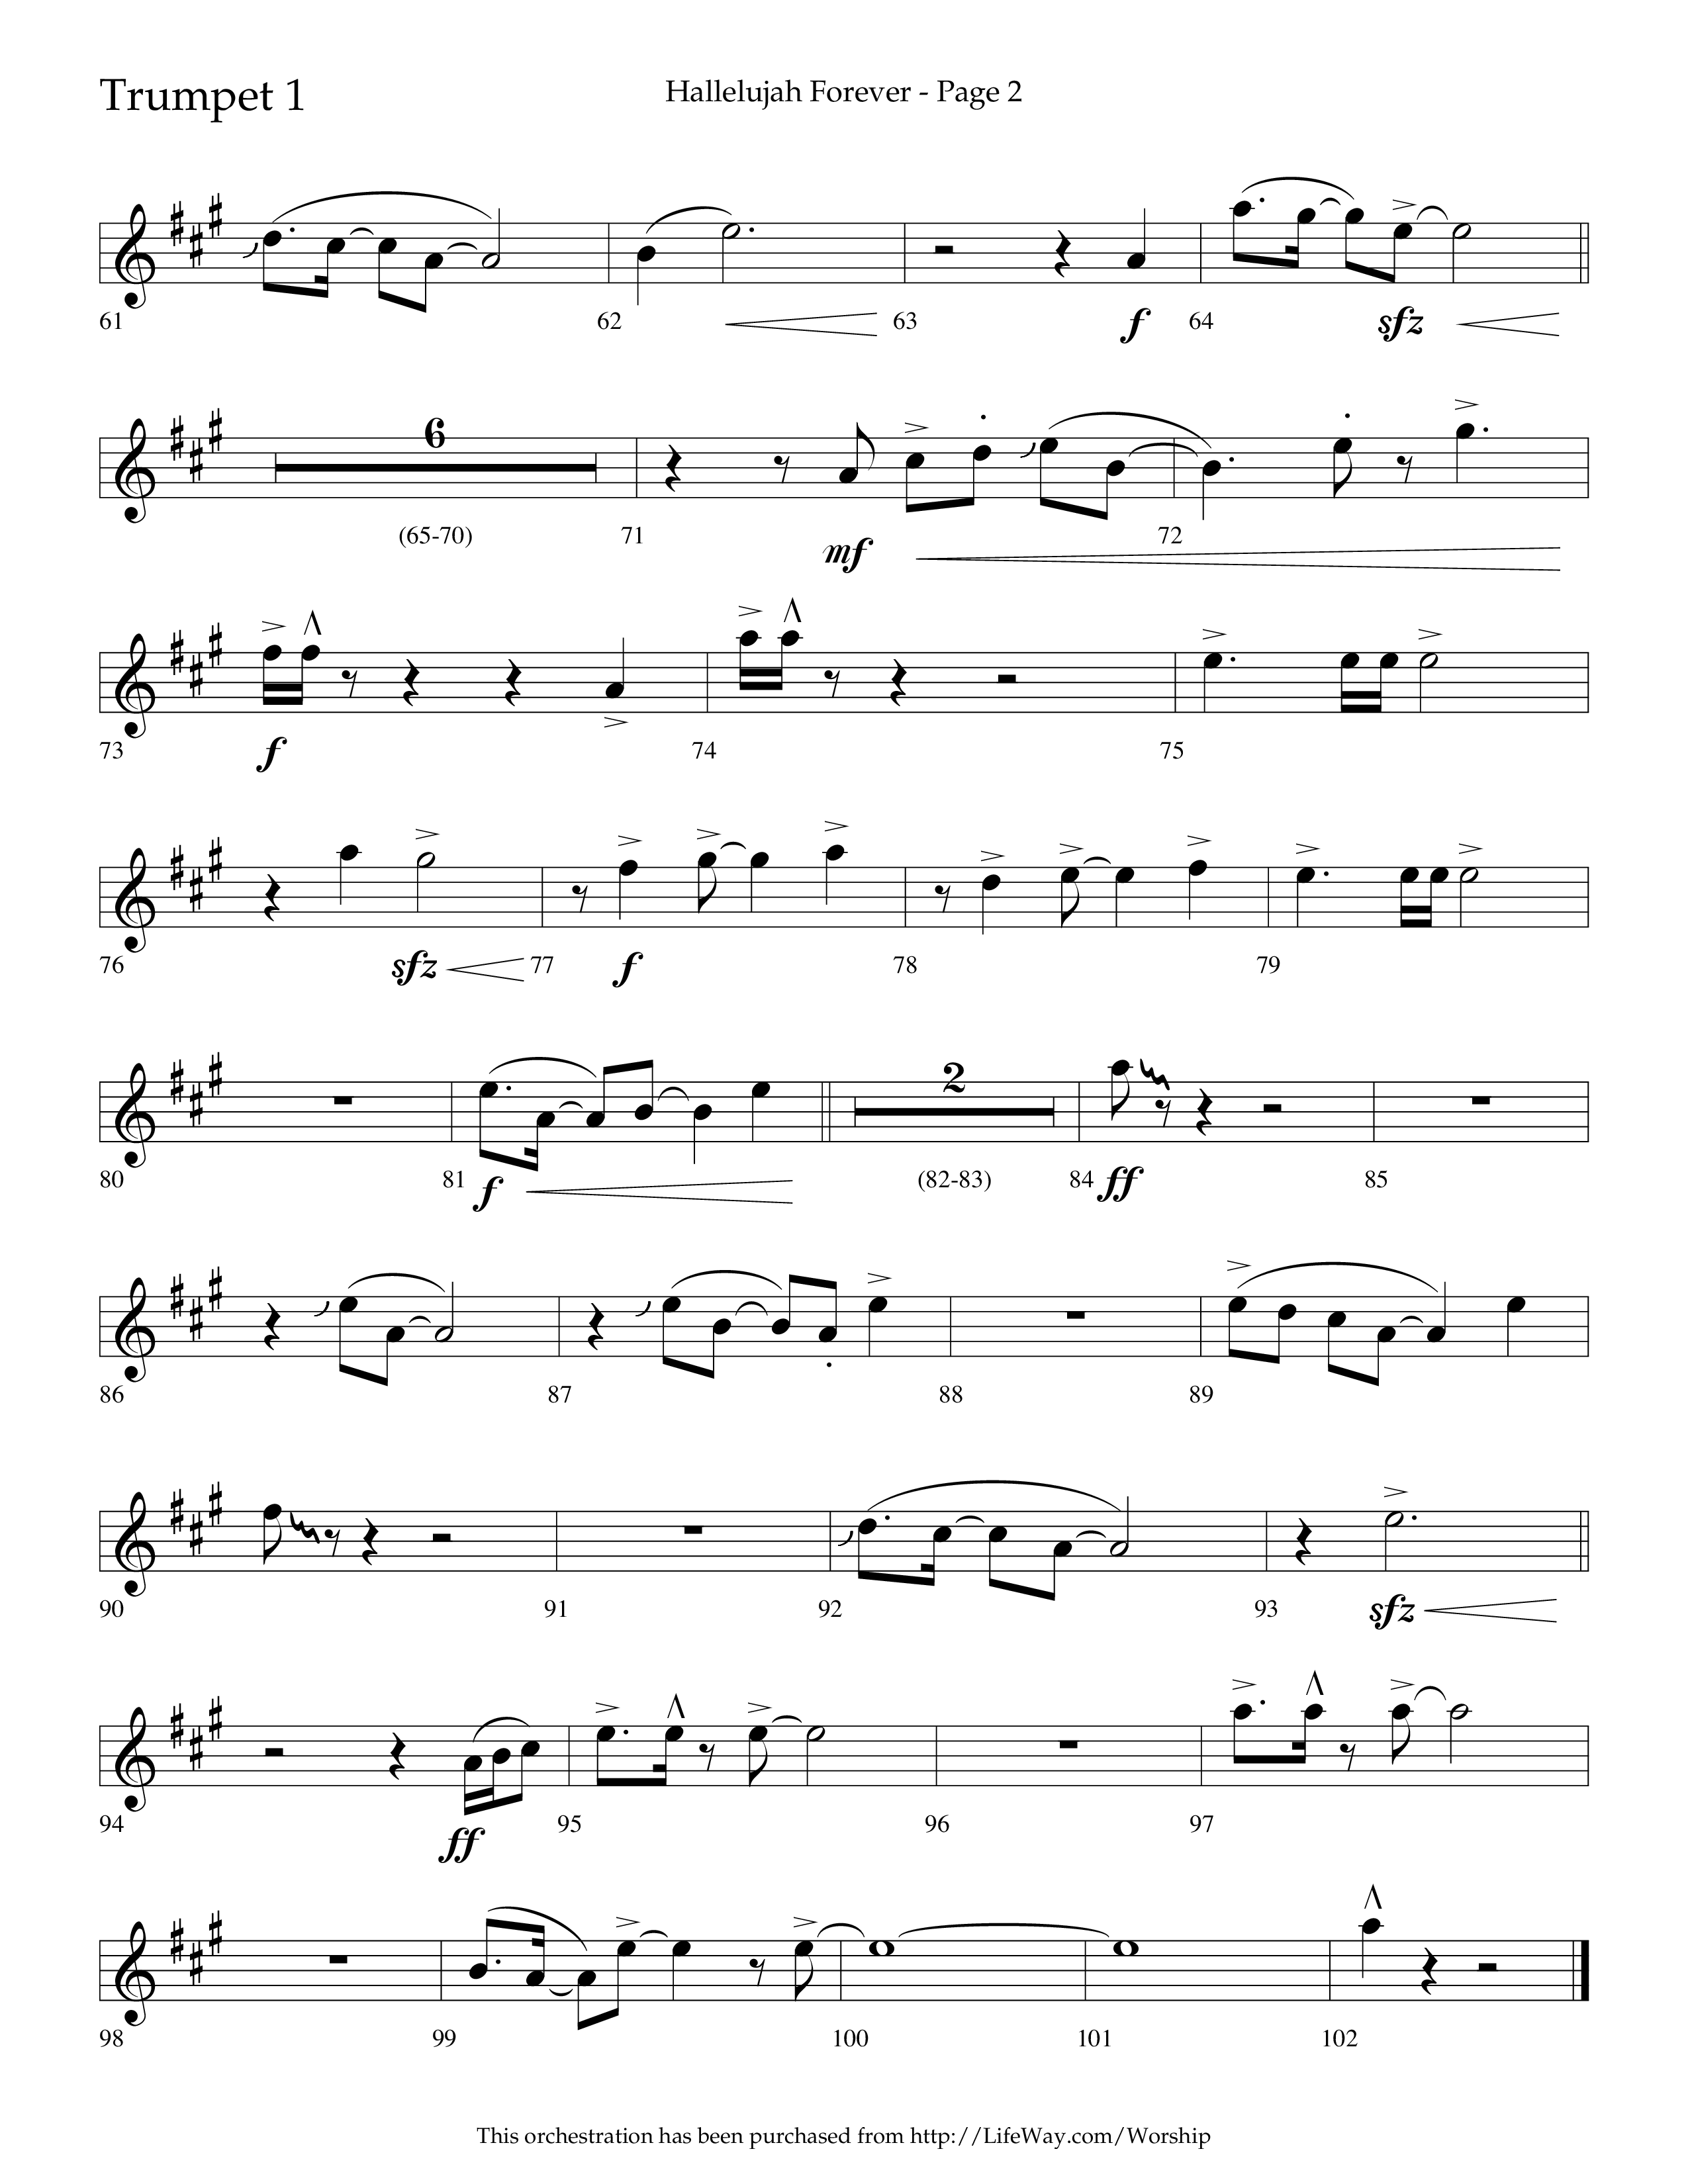 Hallelujah Forever (Choral Anthem SATB) Trumpet 1 (Lifeway Choral / Arr. Cliff Duren)